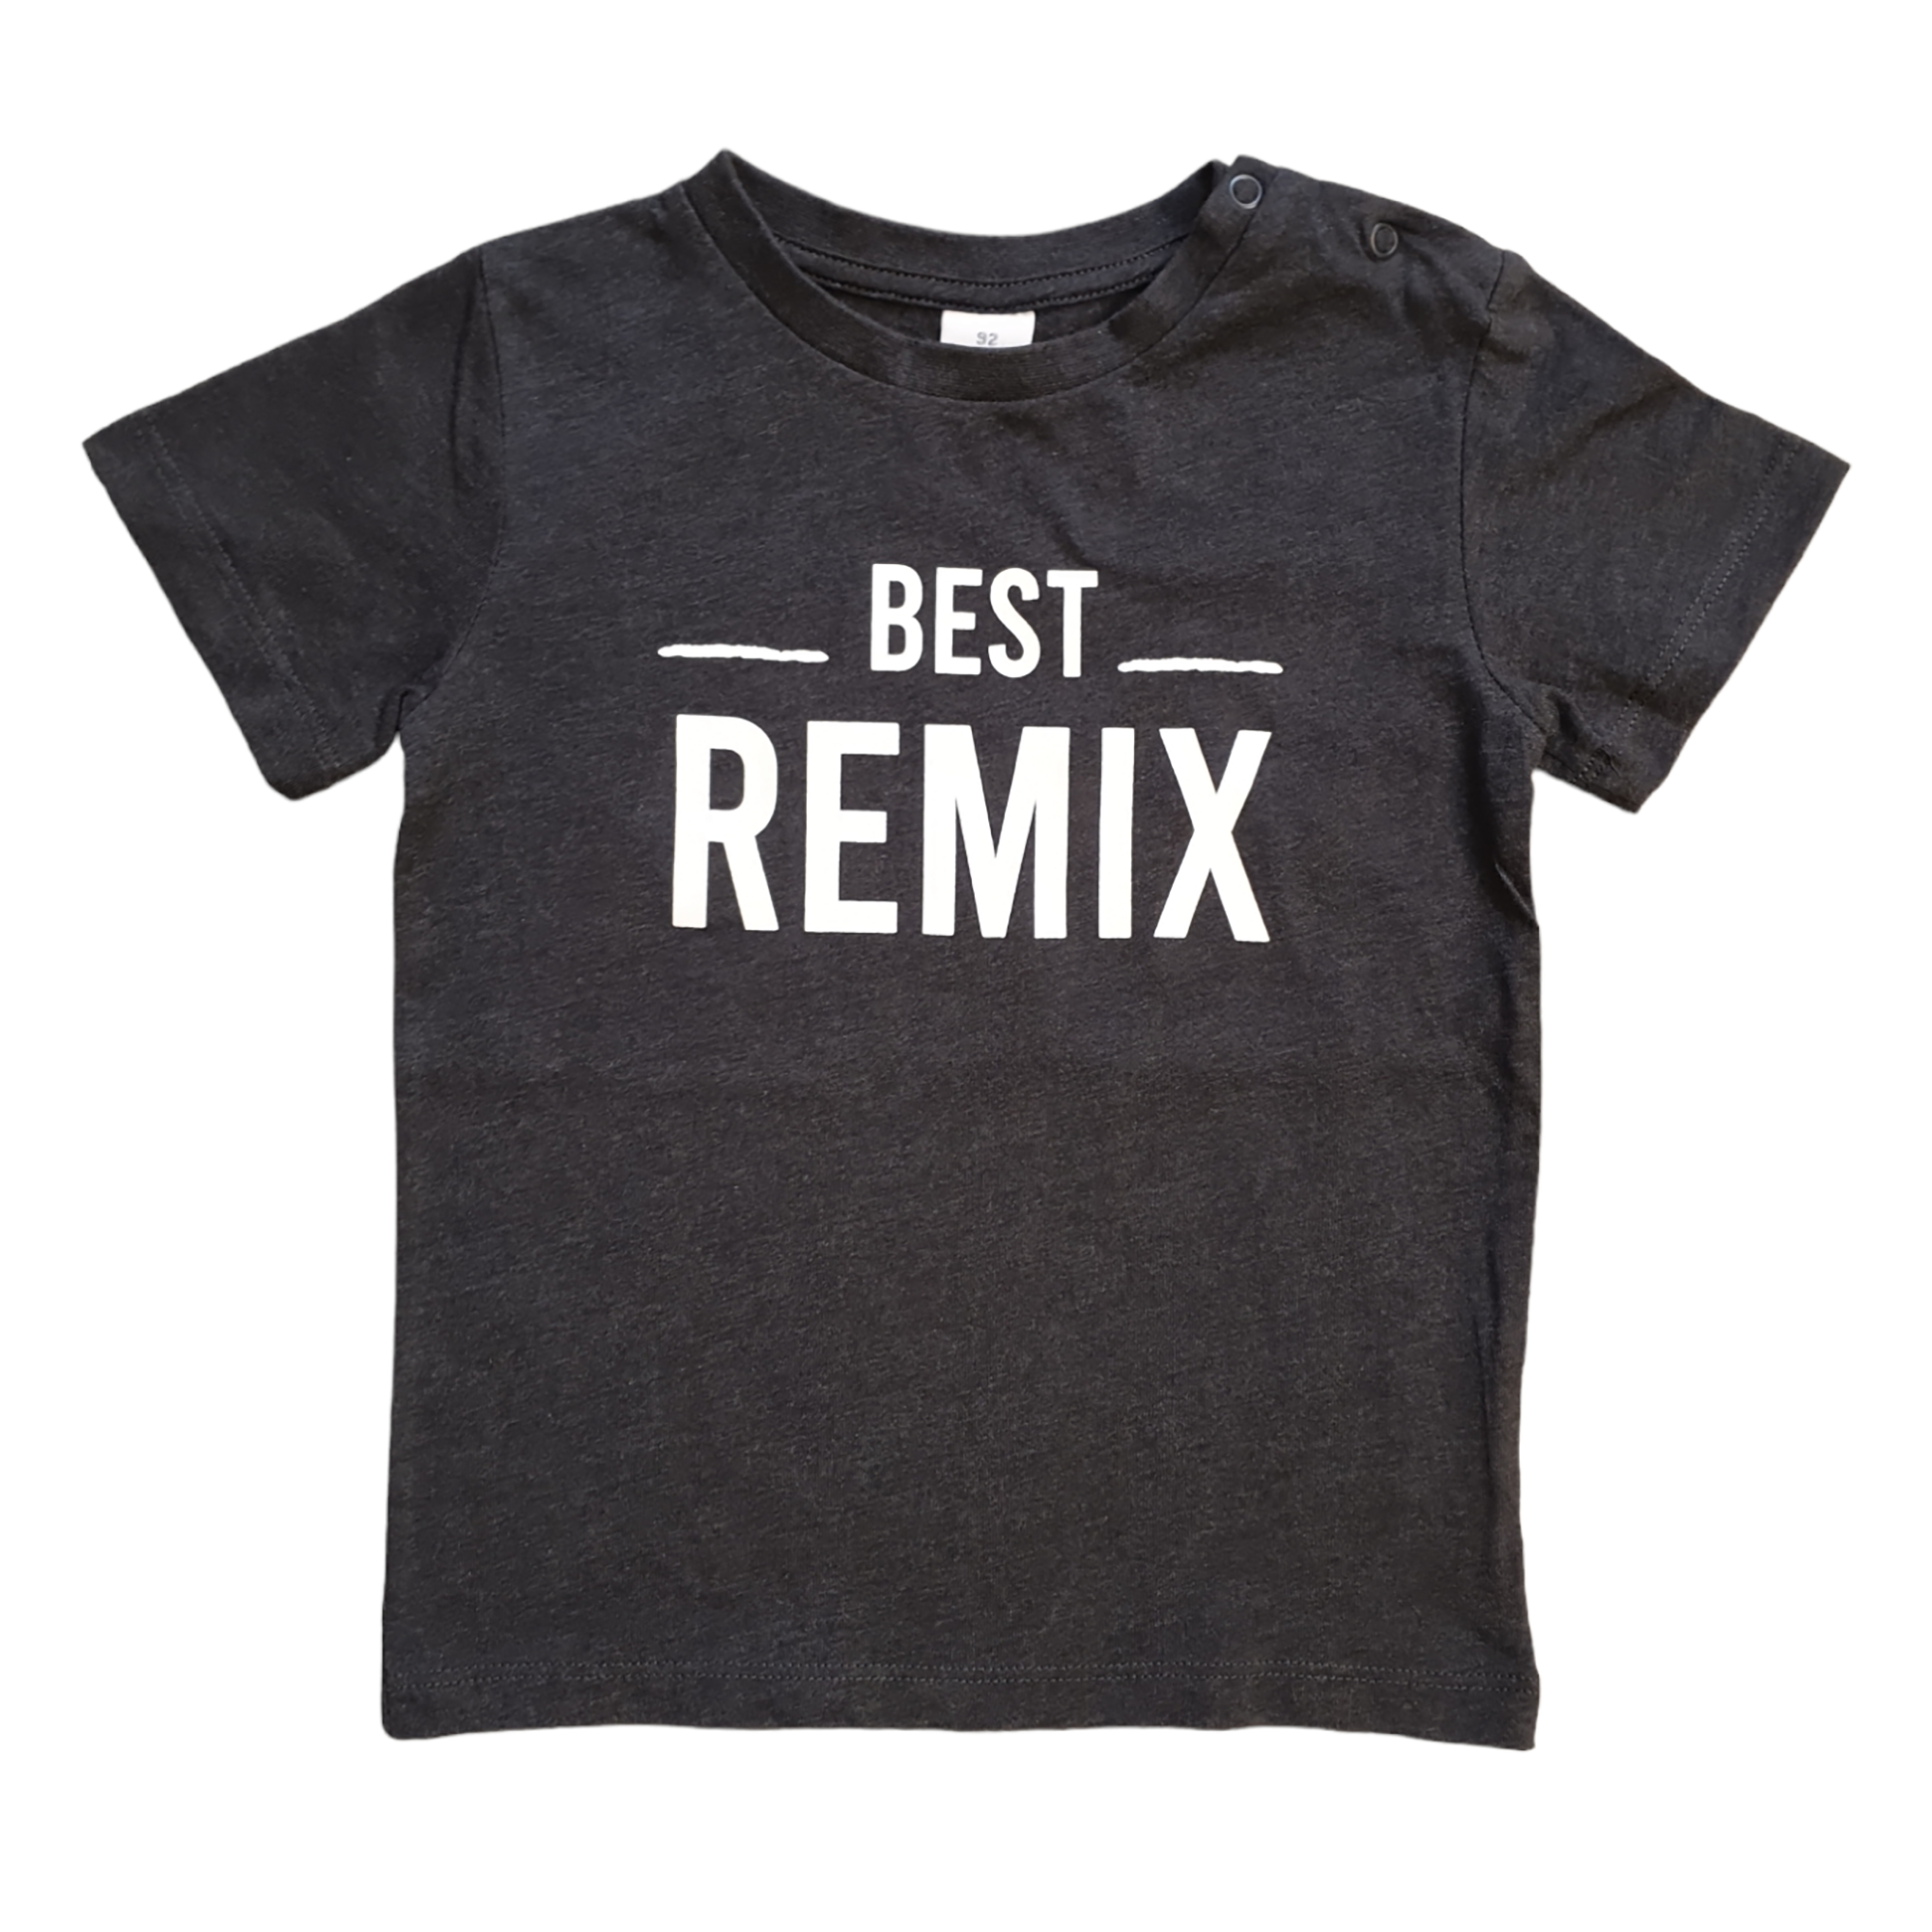 T-Shirt "Best Remix" LITTLE ONE Dunkelgrau M2000584425105 1